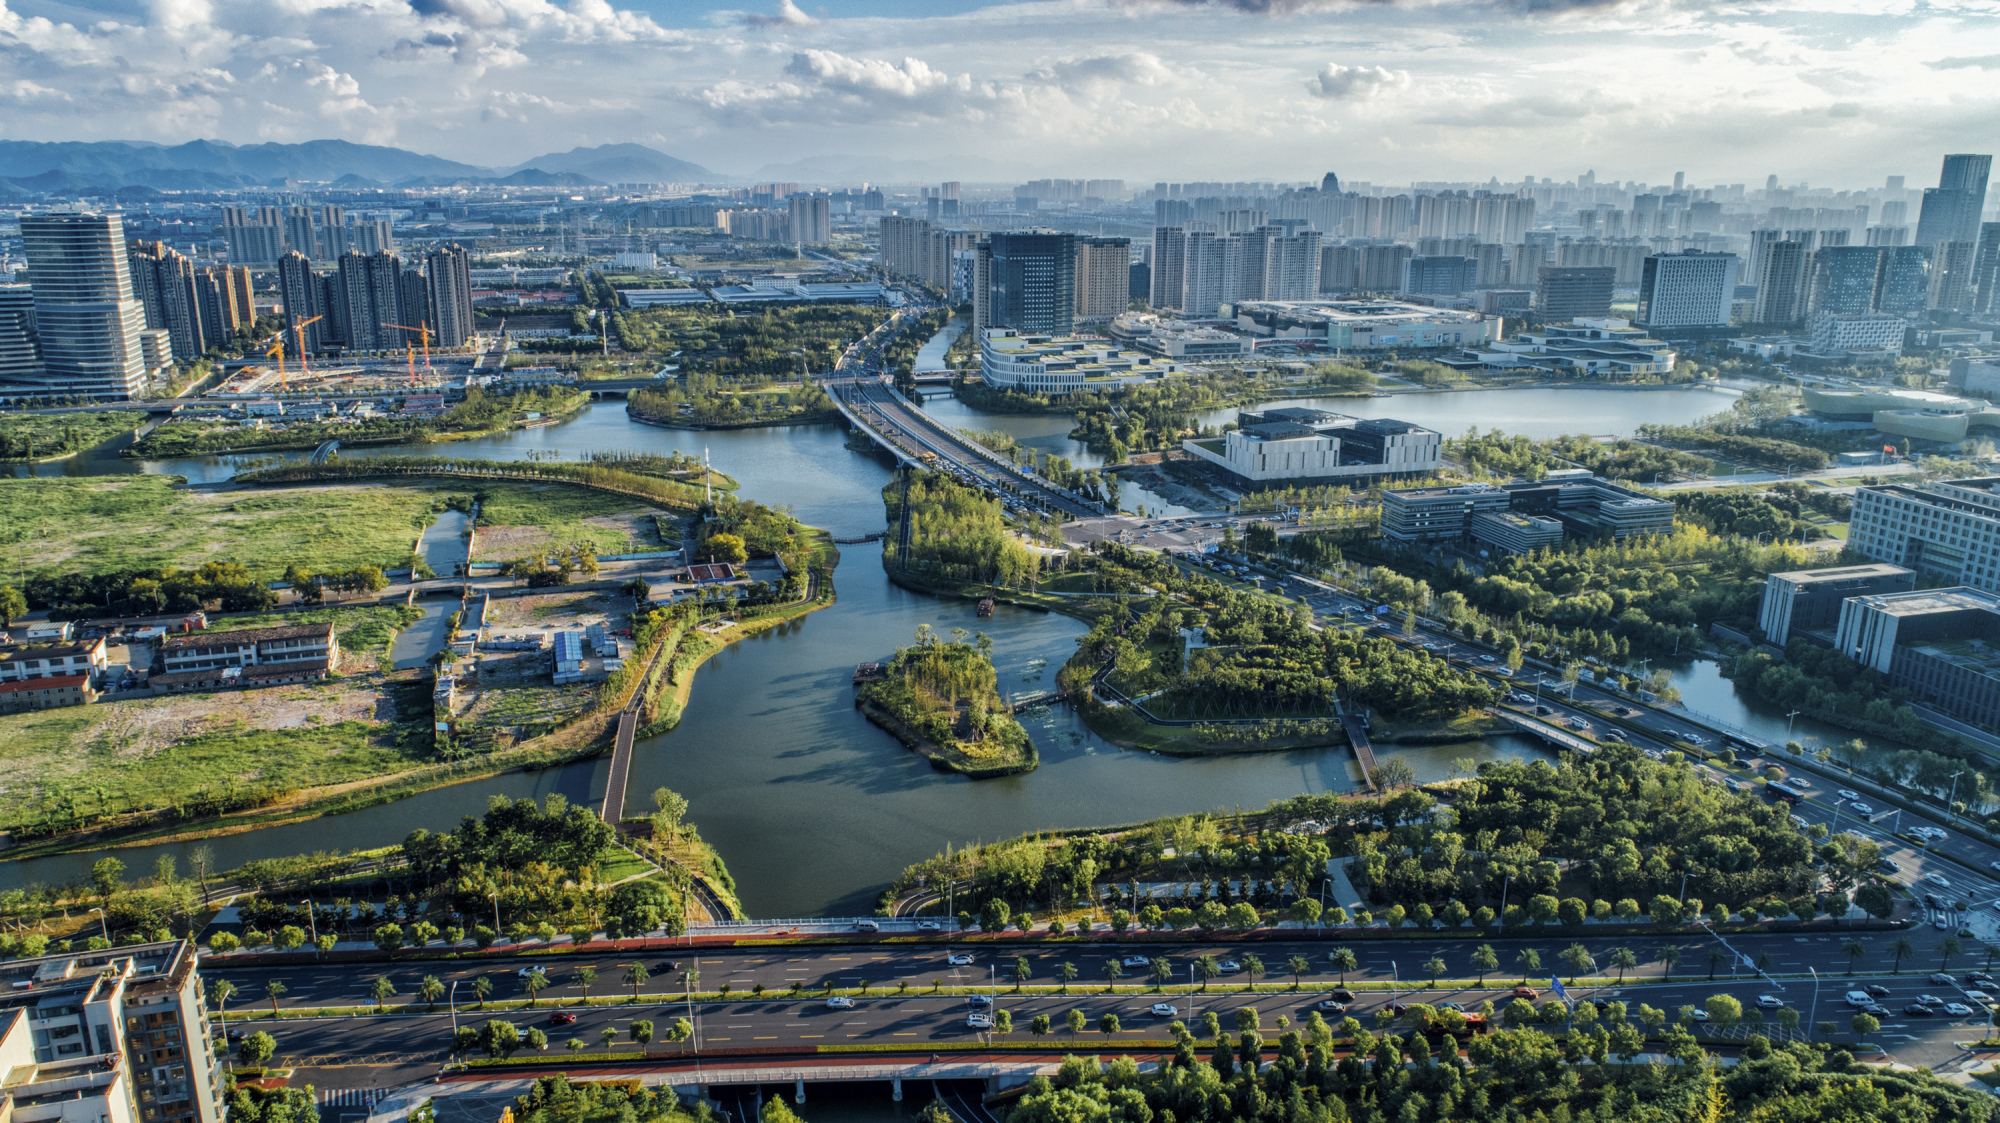 甬江南岸滨江绿带七期项目开工,今年将全面启动六塘河滨河绿带建设